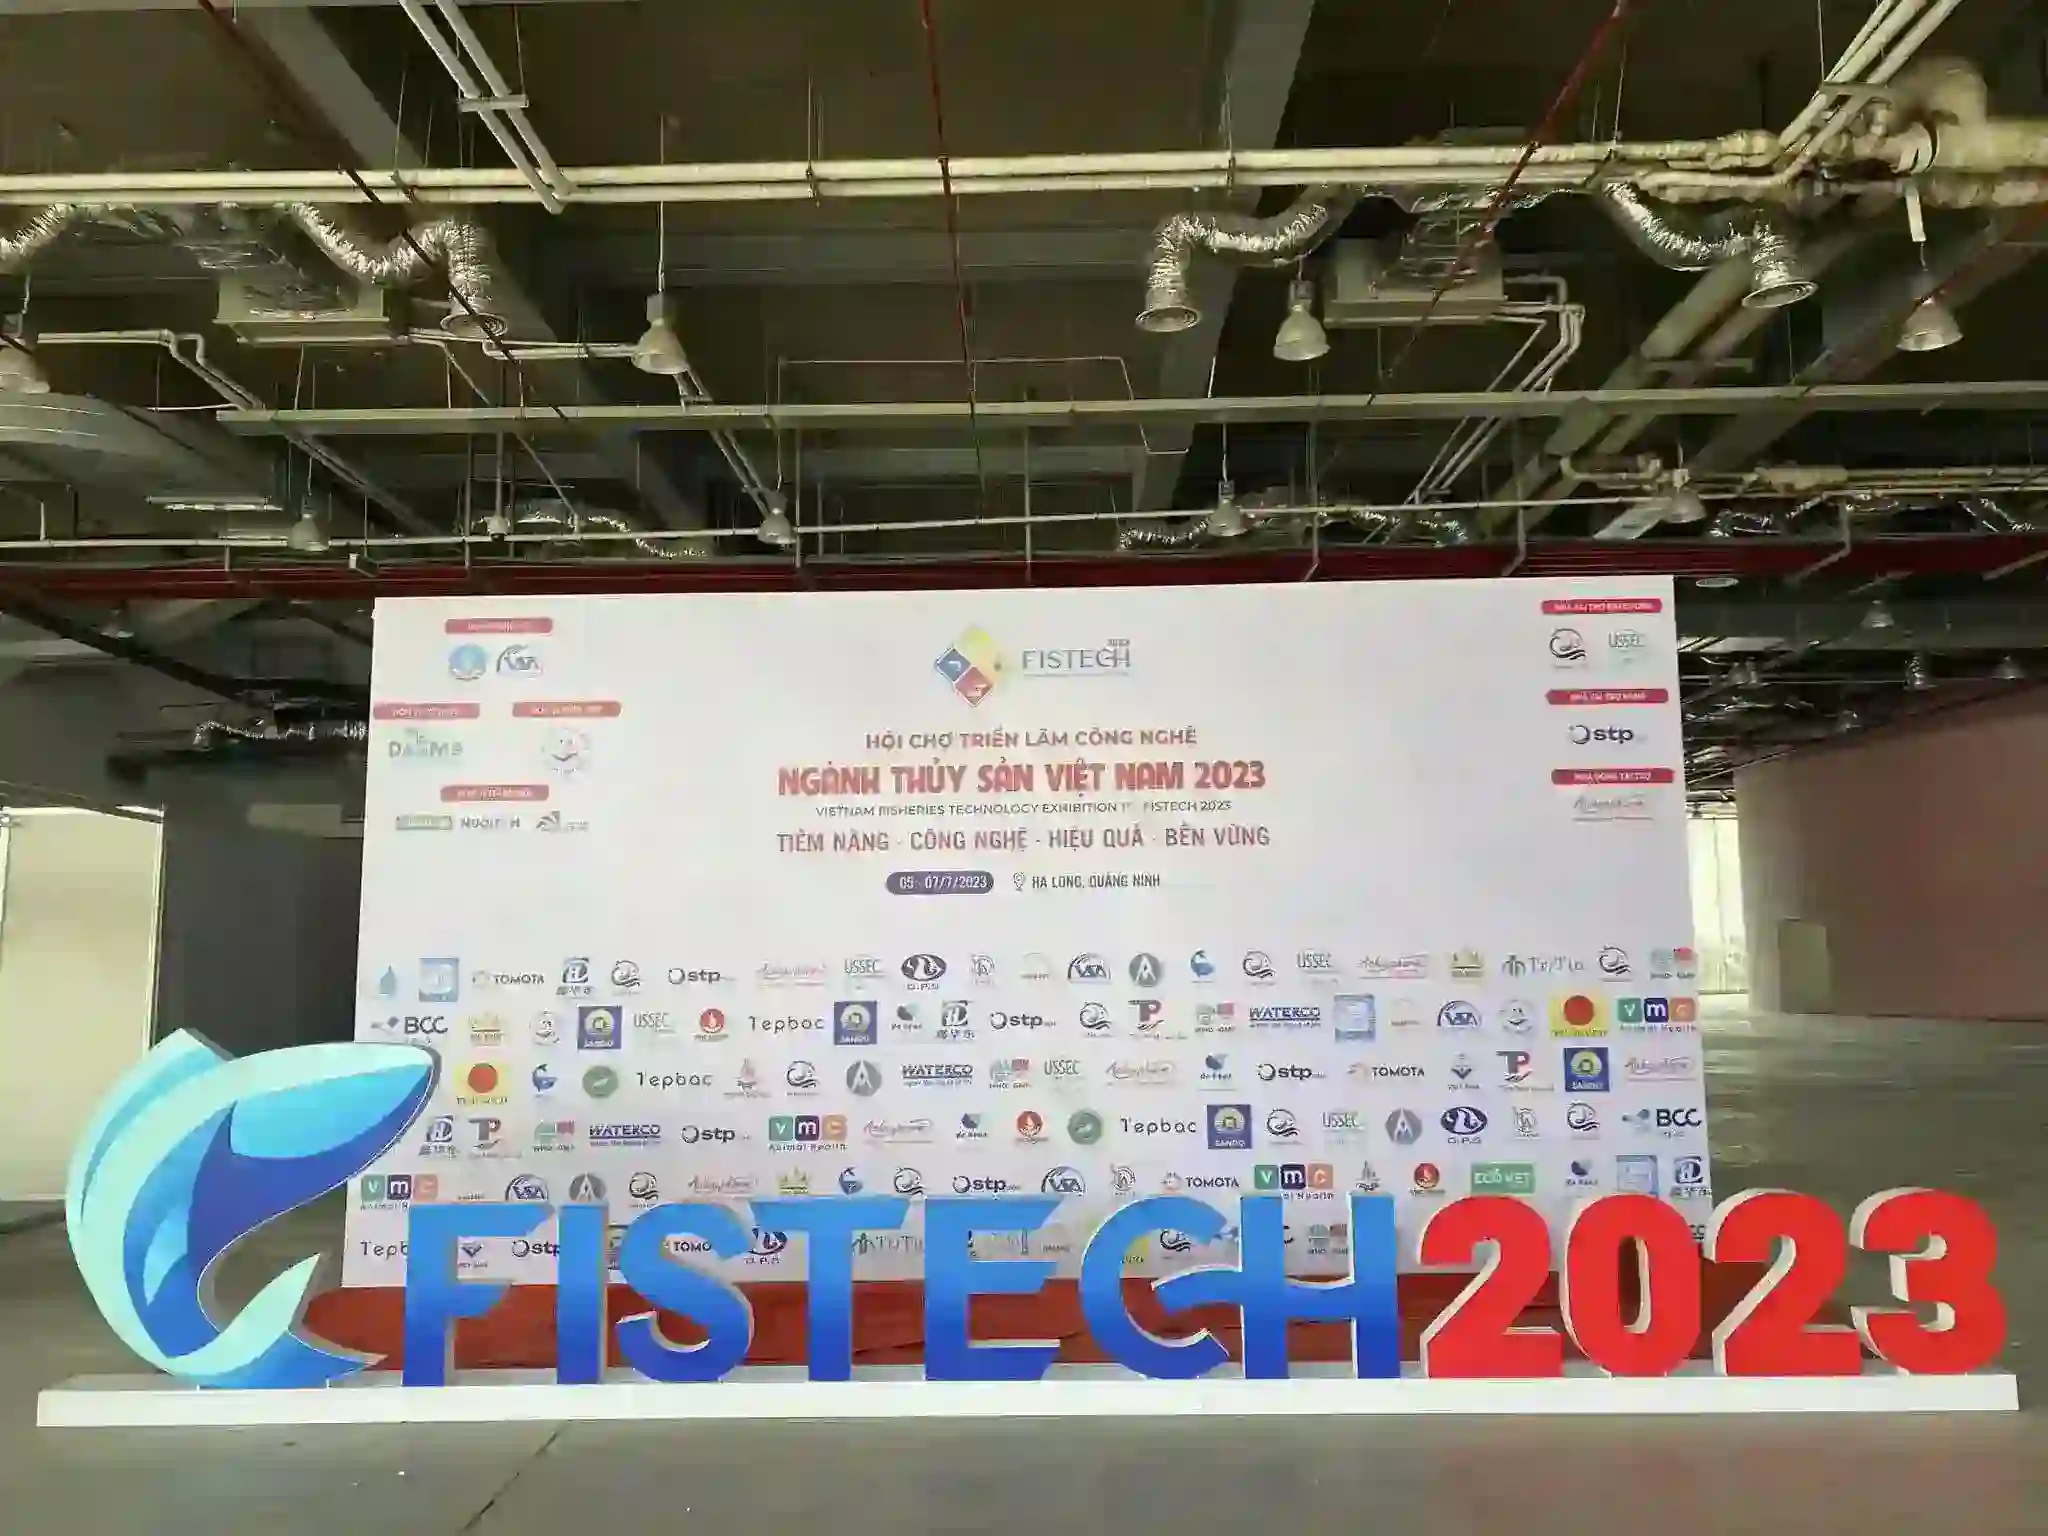 fishtech-2023